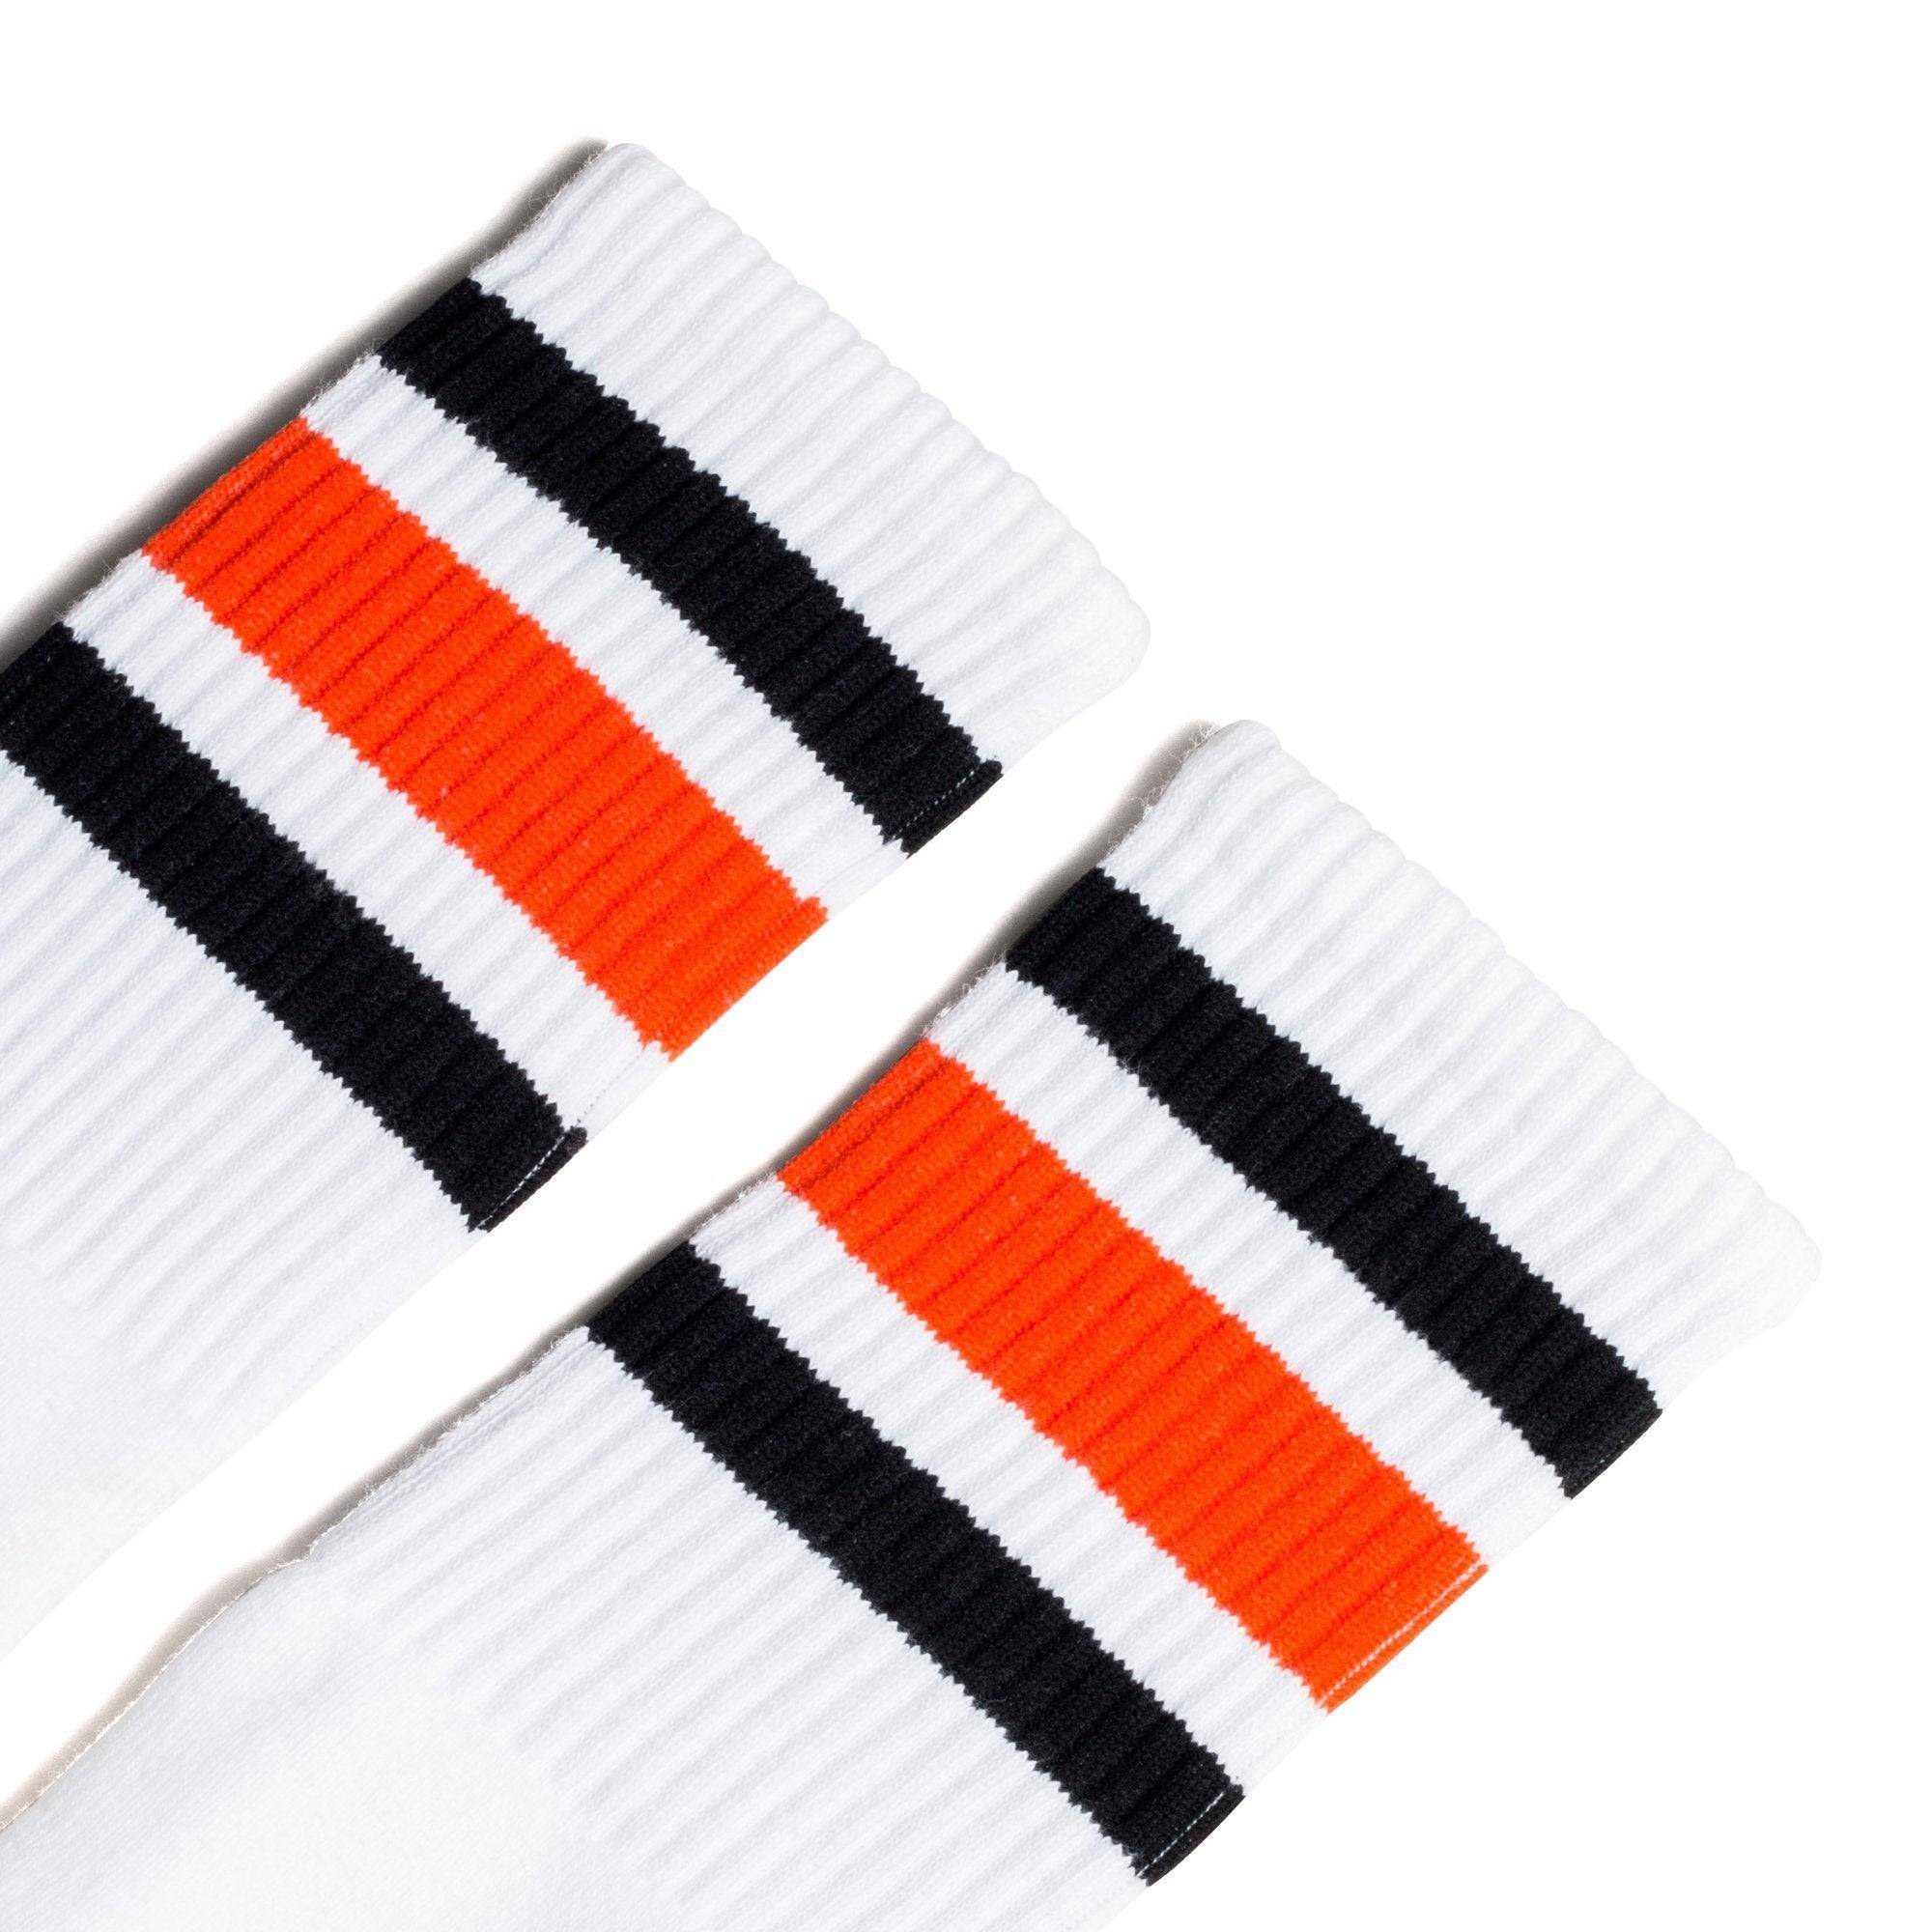 SOCCO I Black and Orange Striped Socks I Made in USA – SOCCO®